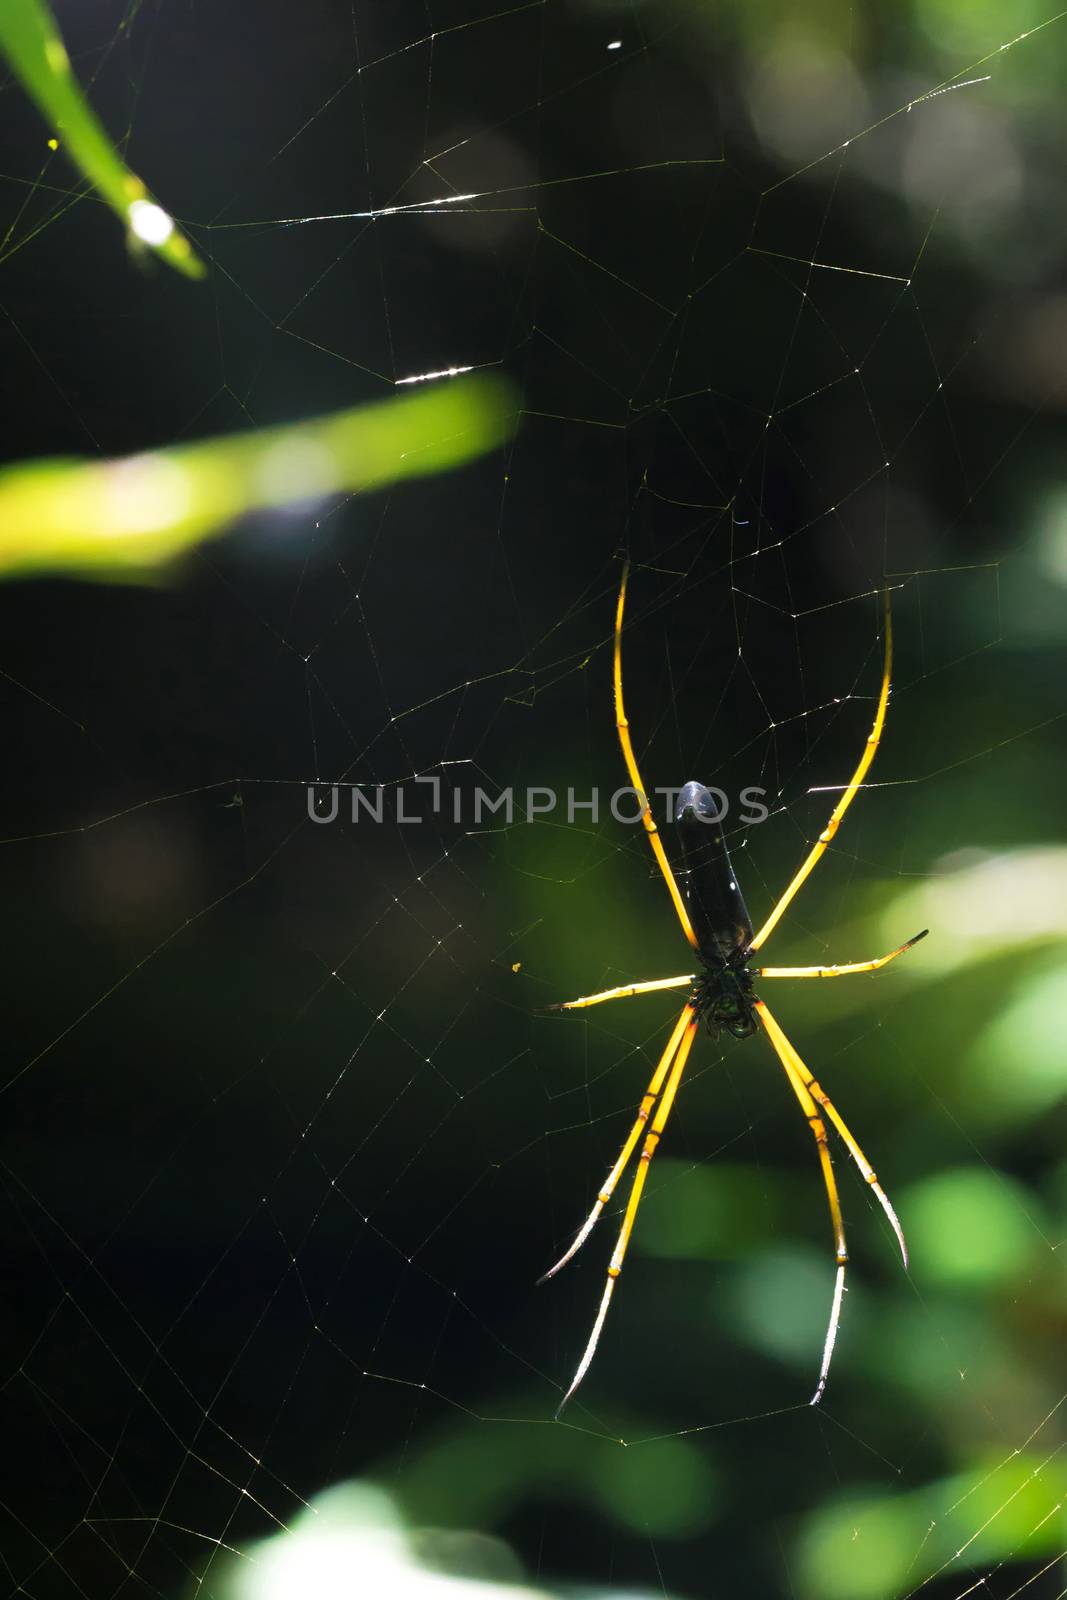 Spider by hkt83000